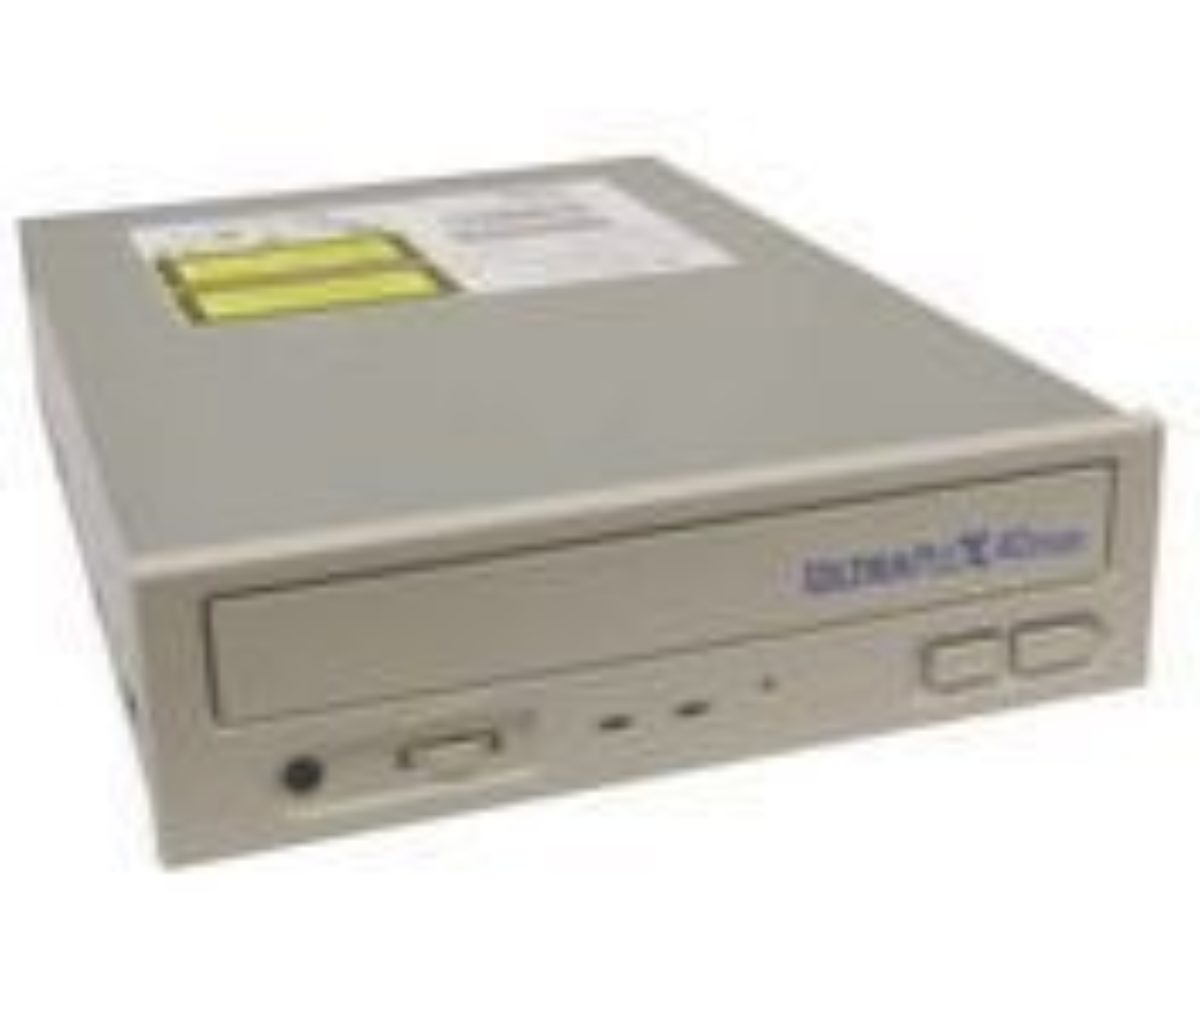 PLEXTOR PX-40TSI Plextor 40X Internal 50pin SCSI CD-ROM BIEGE BEZEL 